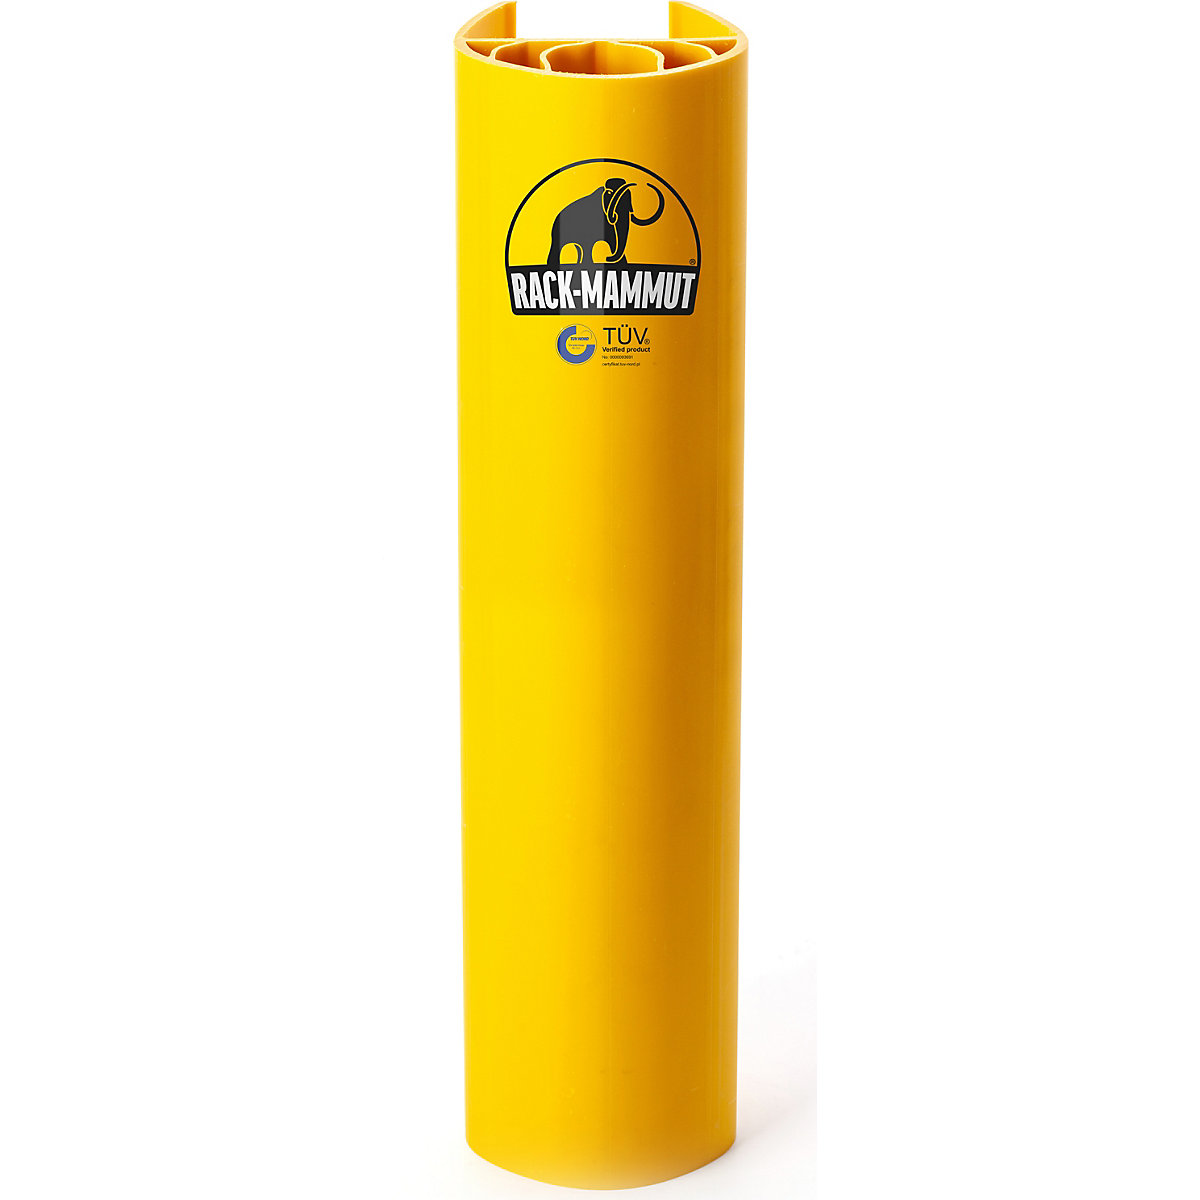 Proteção contra impactos na estante – Ampere Rack Mammut